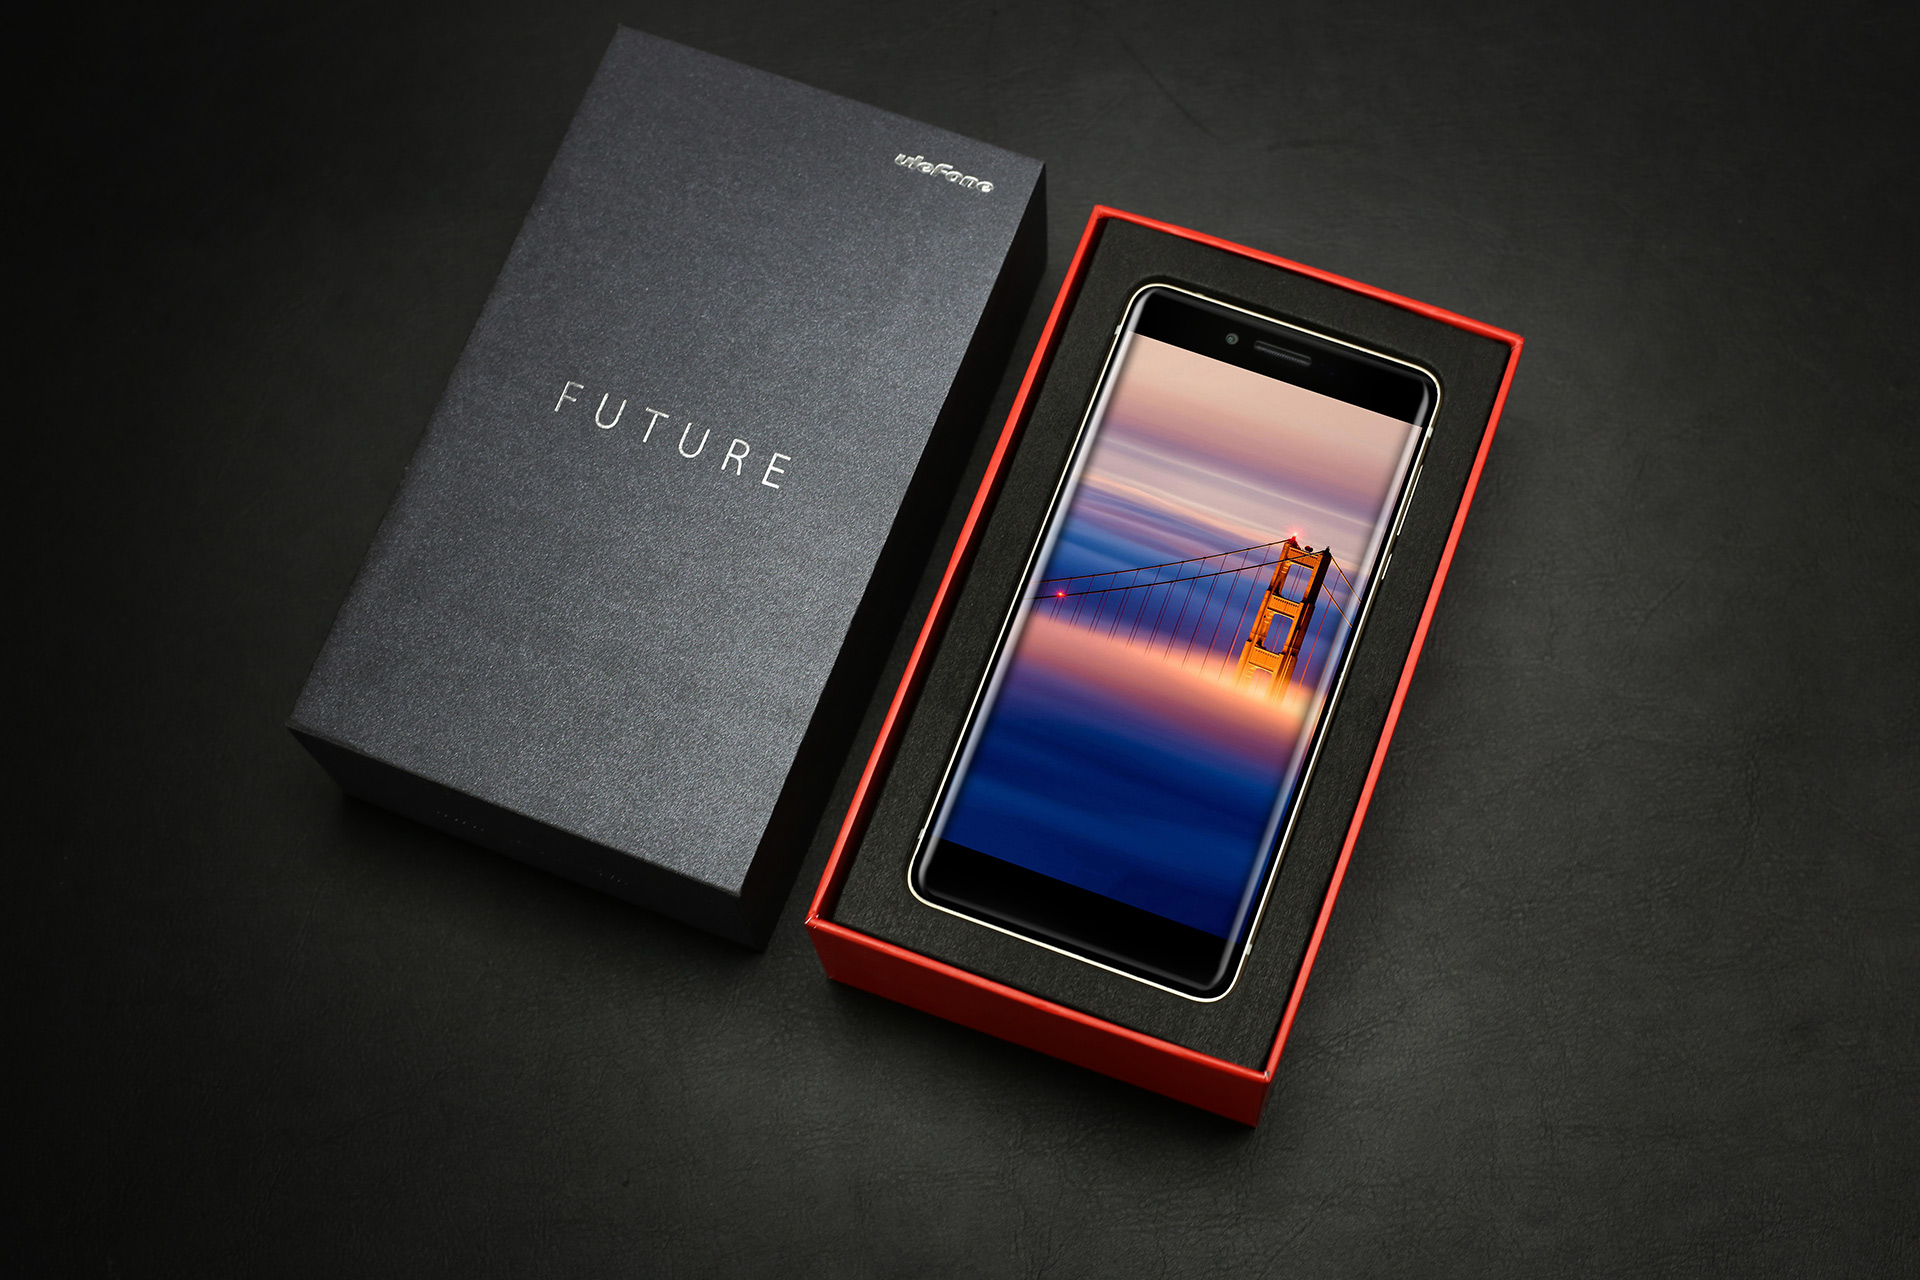 Ulefone-Future (2)